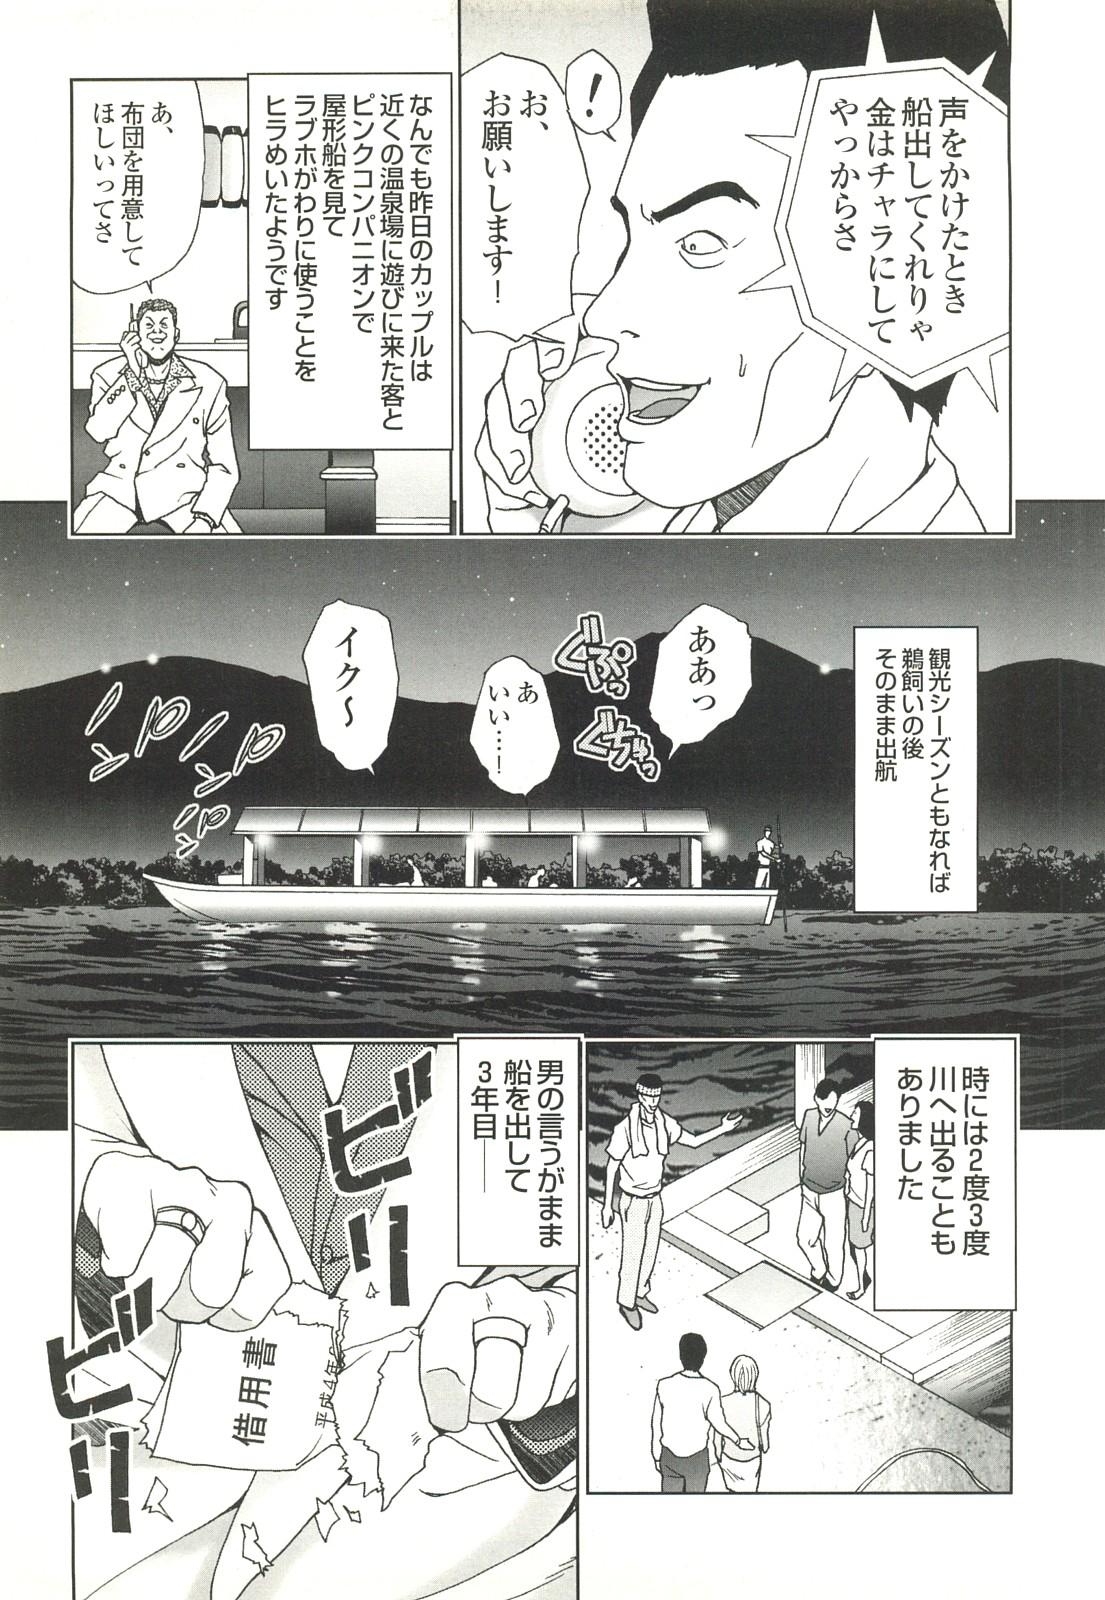 コミック裏モノJAPAN Vol.18 今井のりたつスペシャル号 282